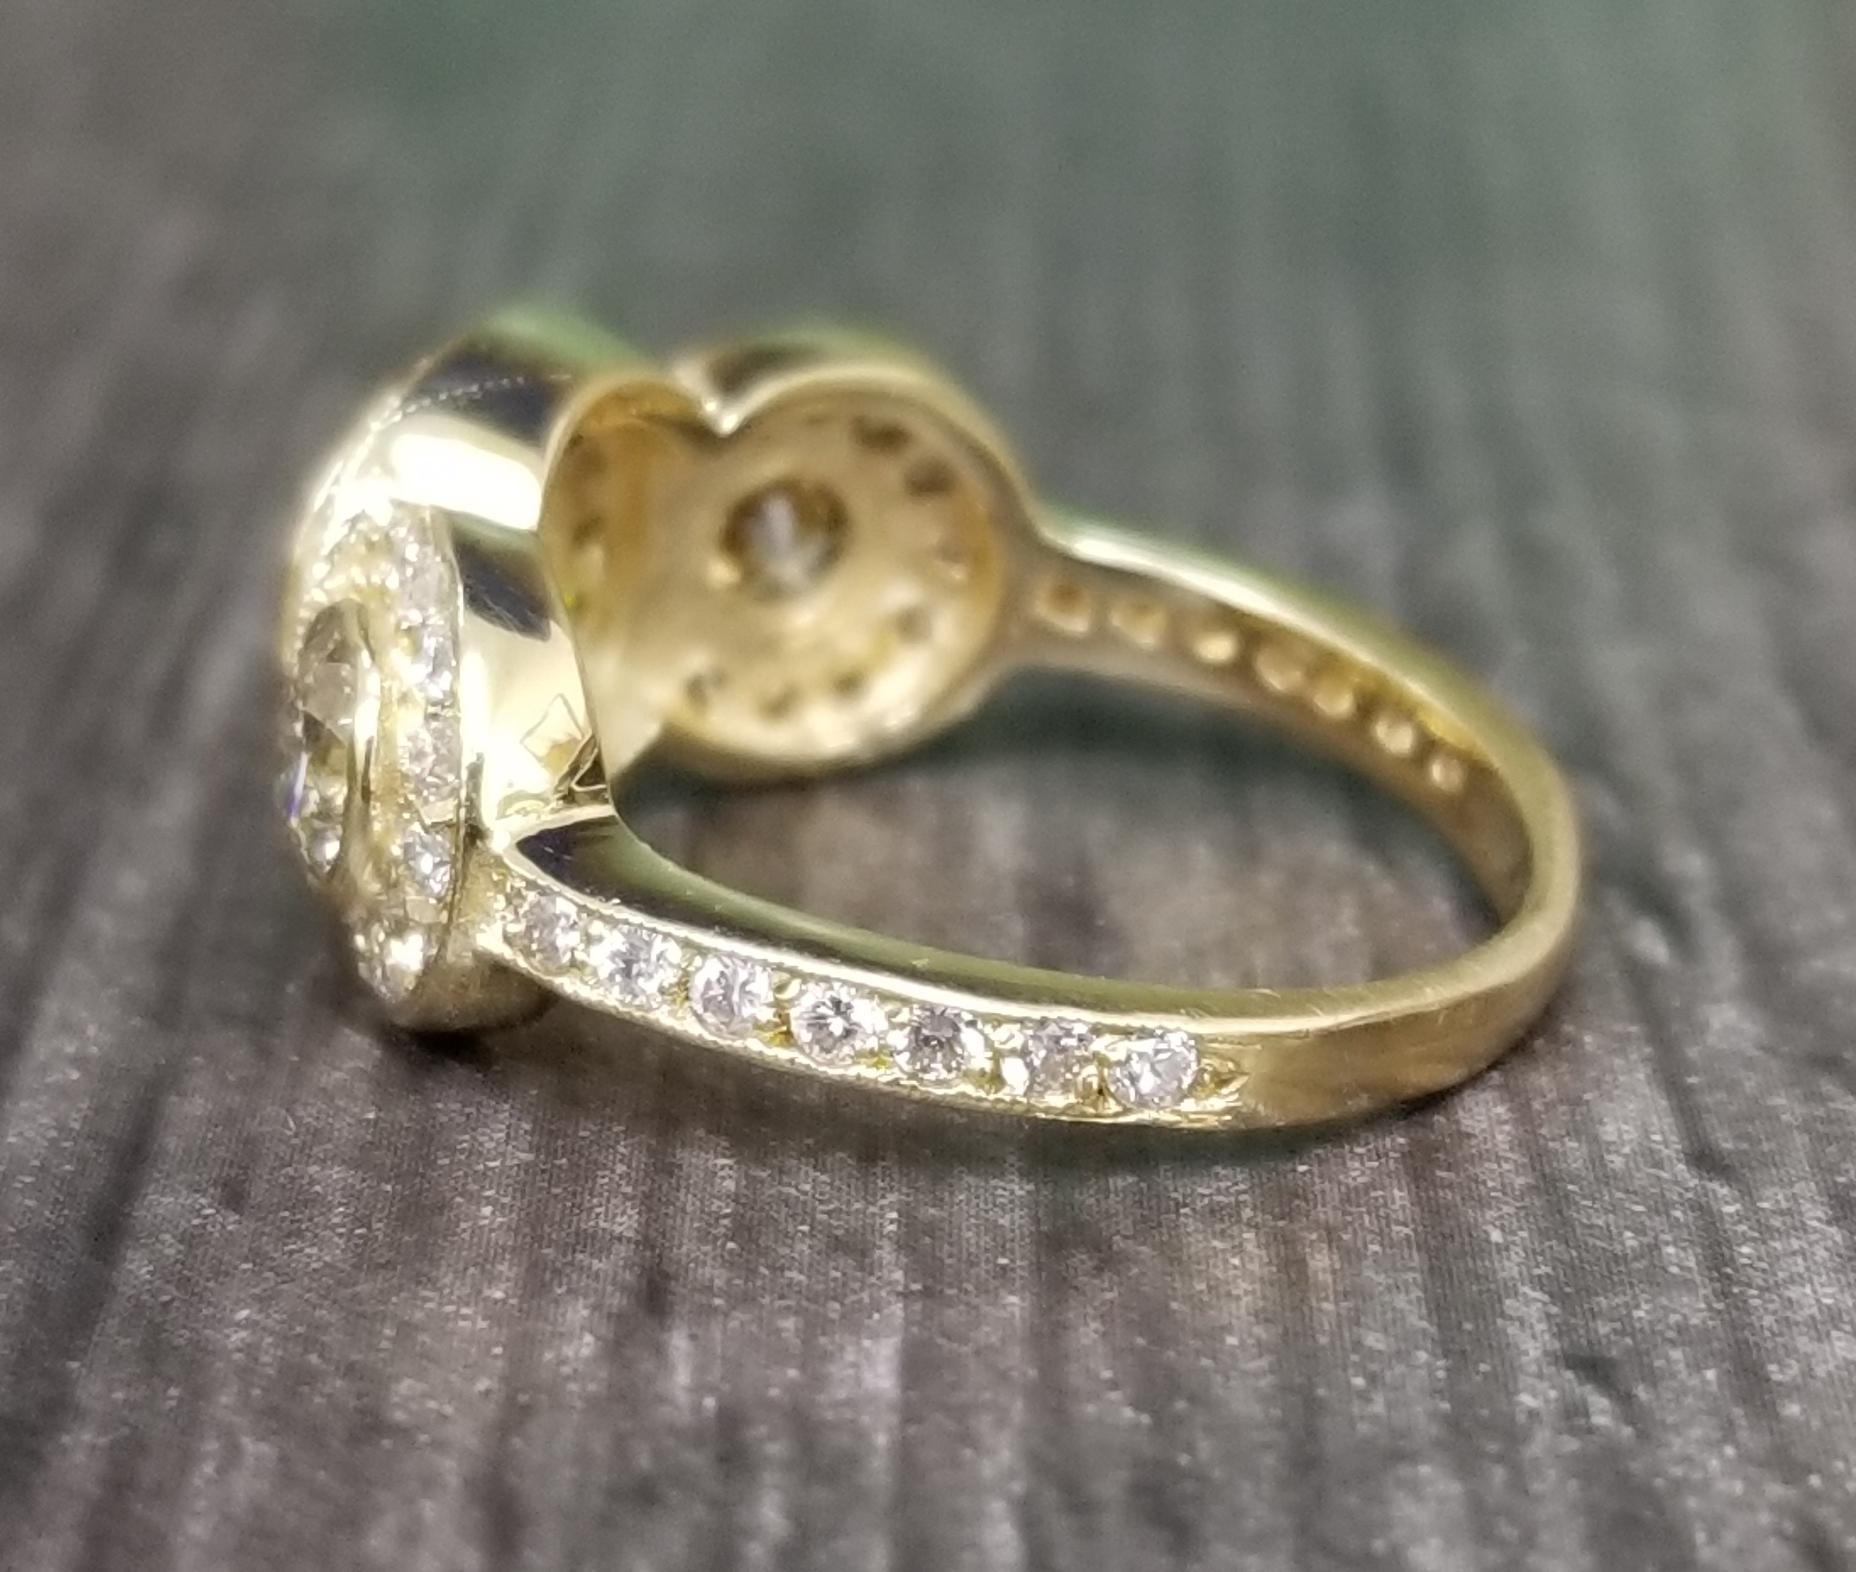 3 stone halo engagement ring